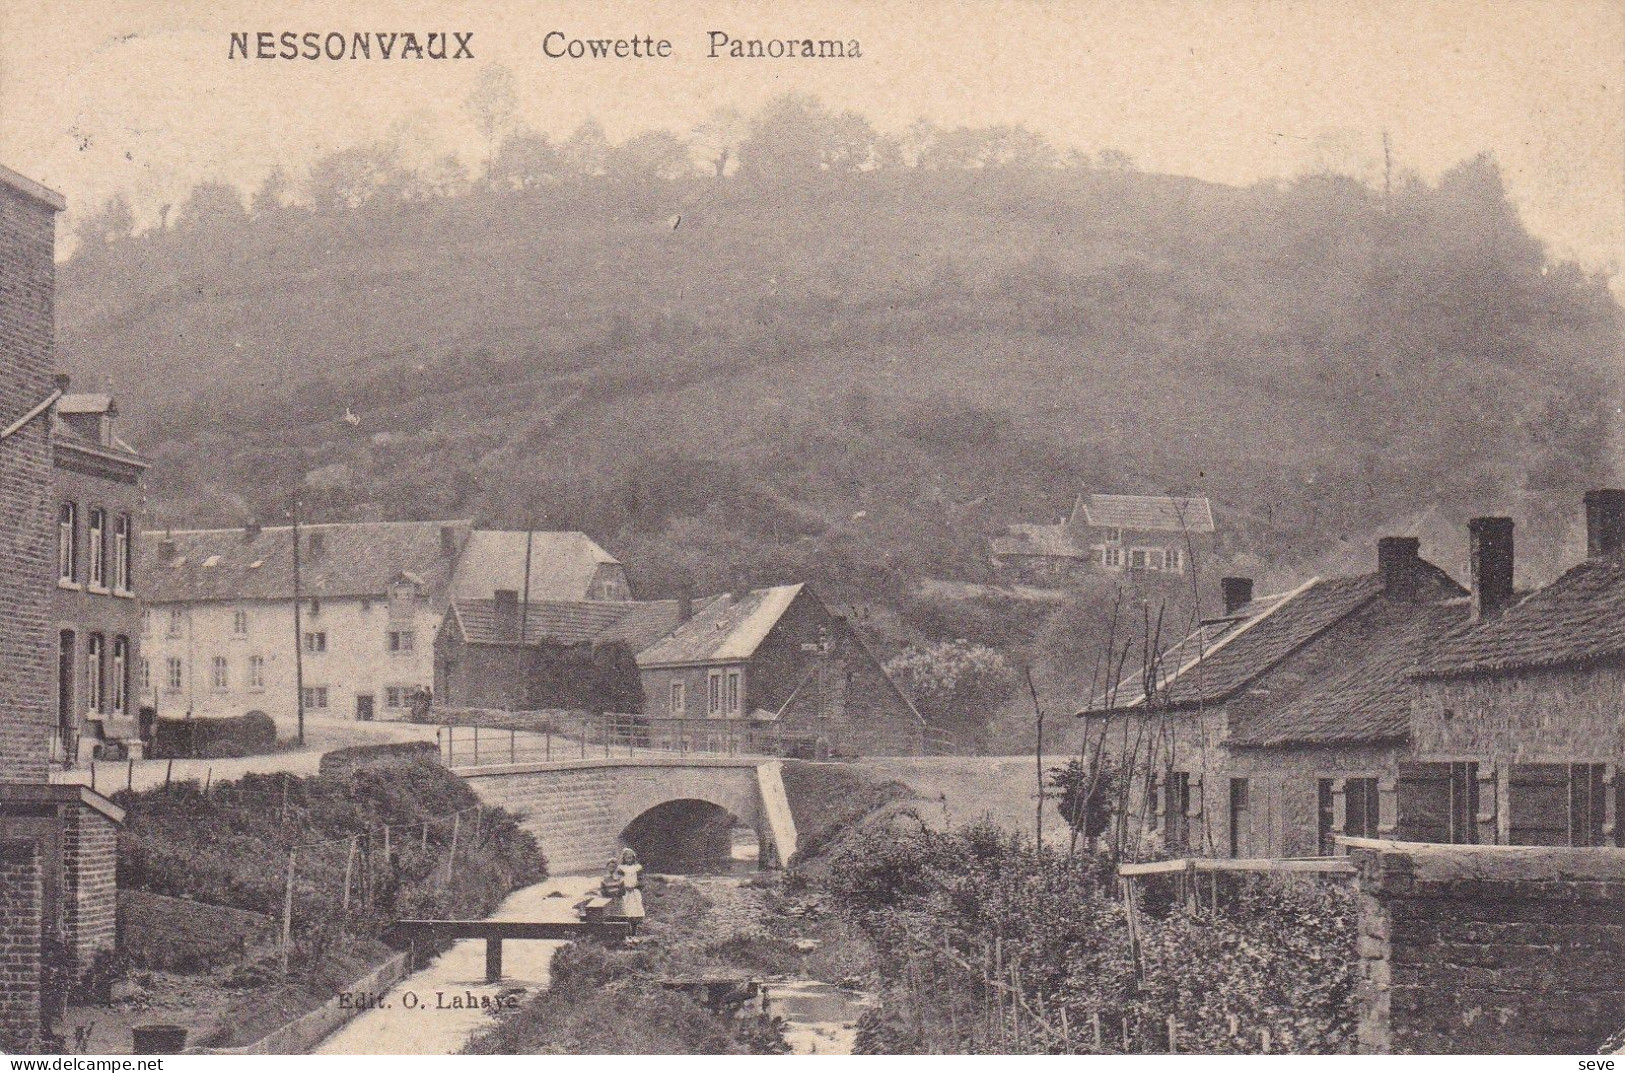 14-18 NESSONVAUX  Cowette Panorama Carte Postée Vers Bruxelles En 1913 Ou 1919 - Trooz